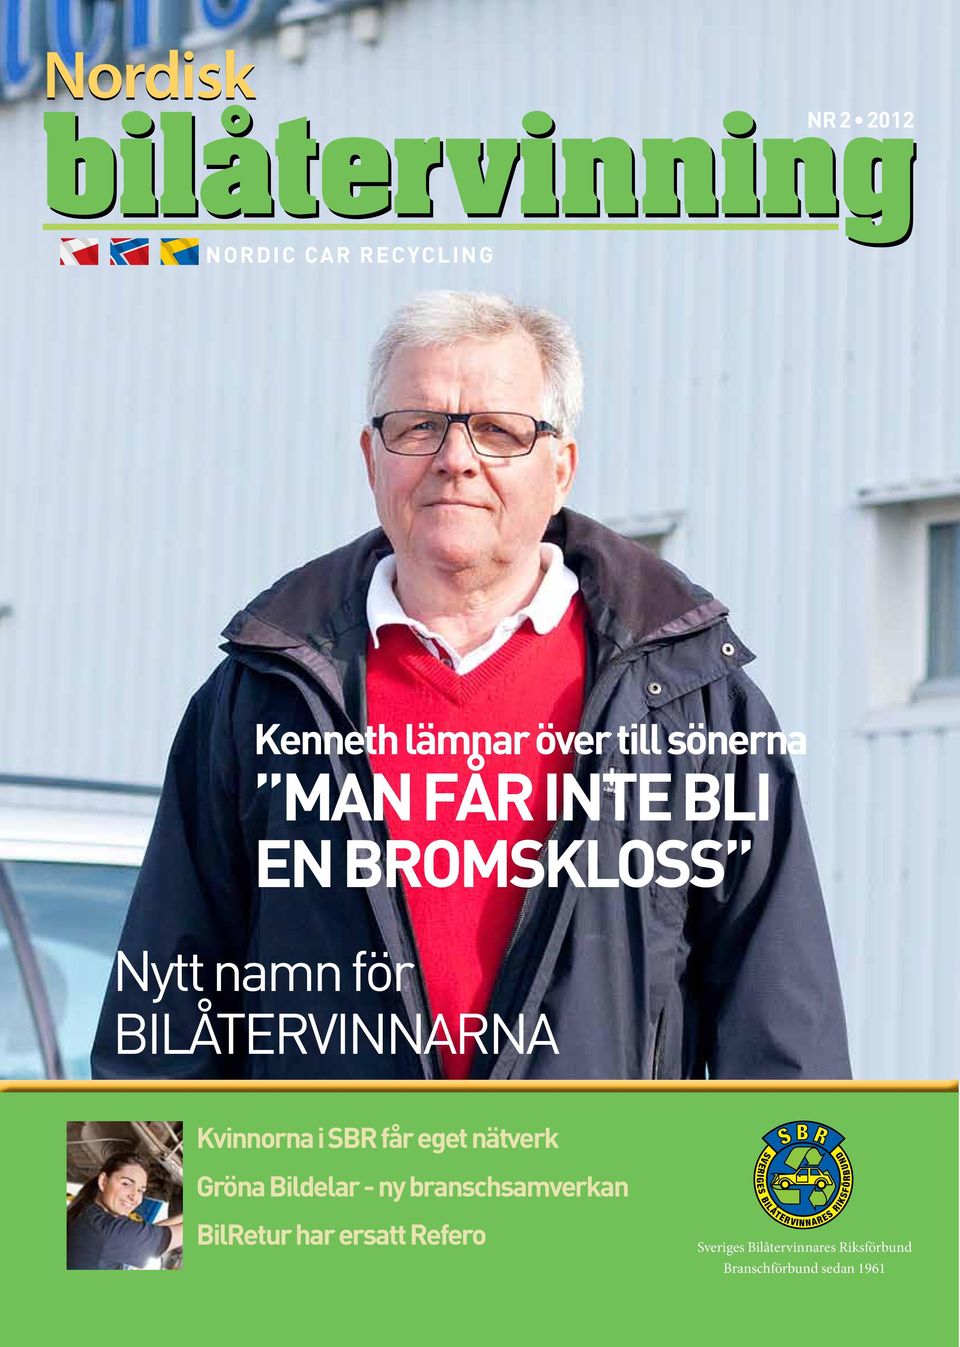 Refero Sveriges Bilåtervinnares Riksförbund Branschförbund sedan 1961 nordisk bilåtervinning 1 2012 nbå 1 Blå=